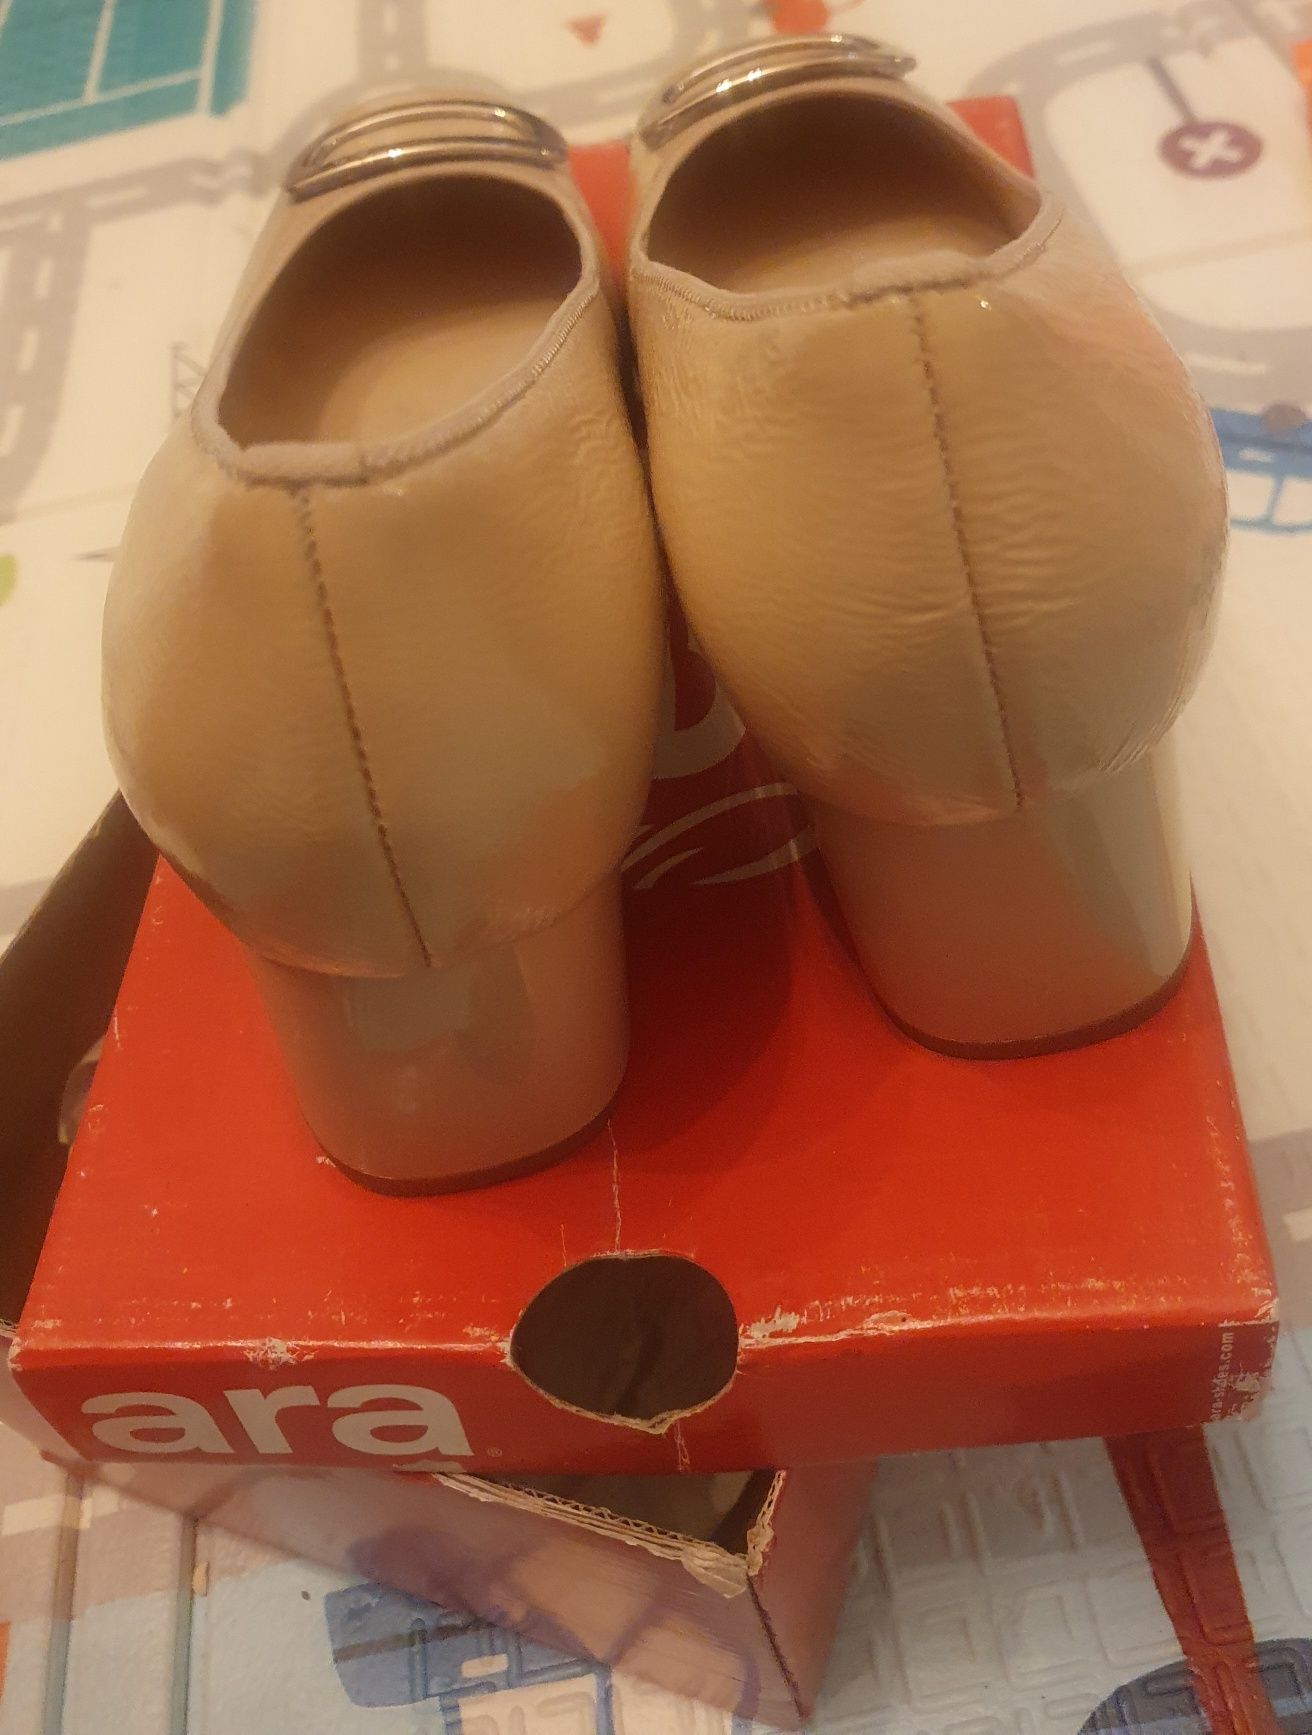 Vând Pantof elegant dama Ara, din piele naturala de culoare bej